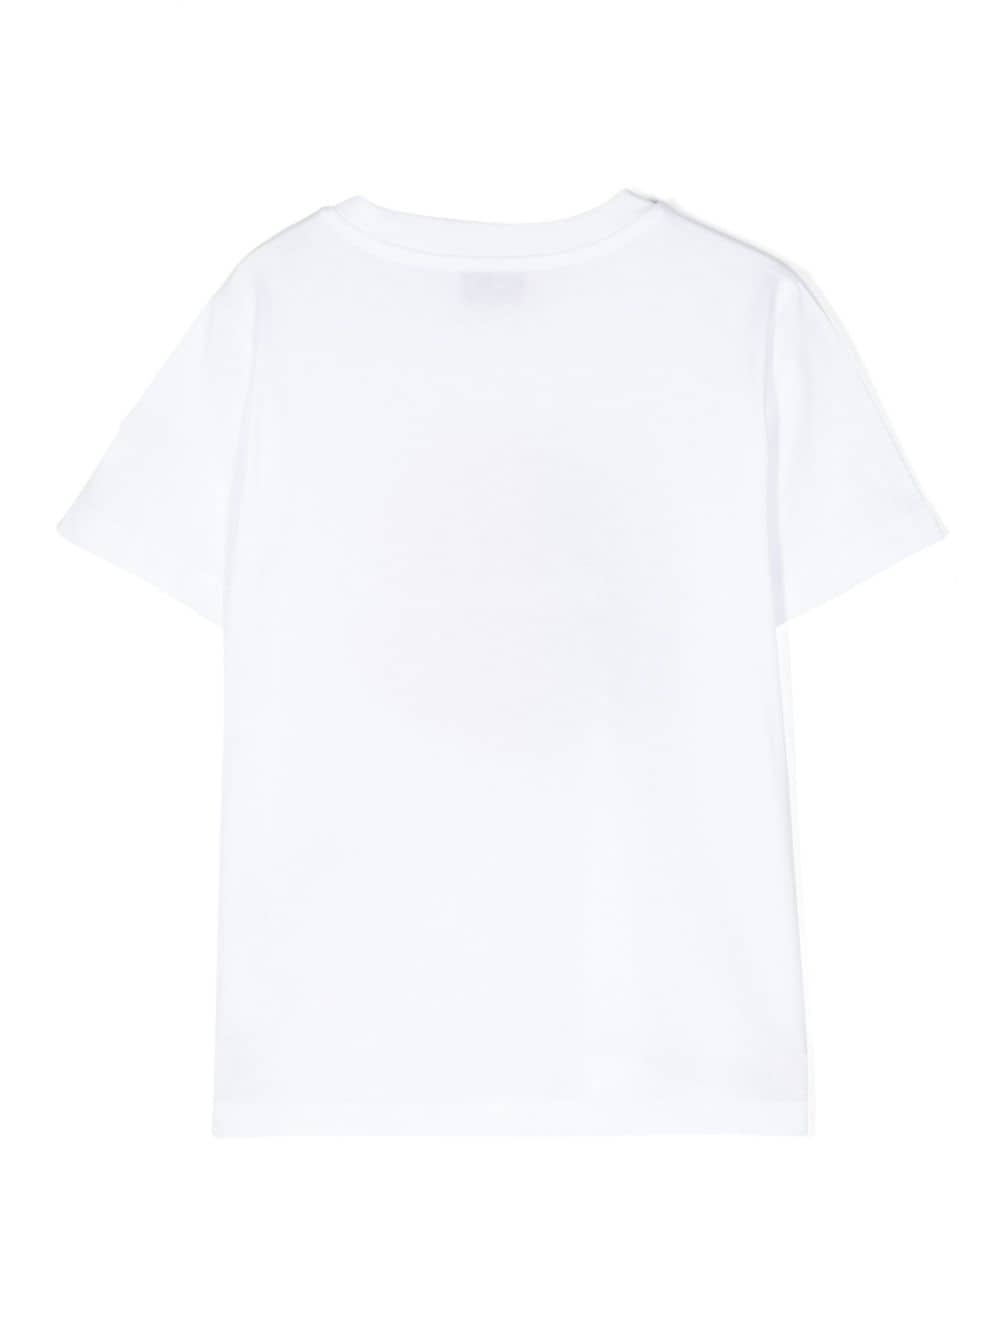 T-shirt bianca per bambino con logo